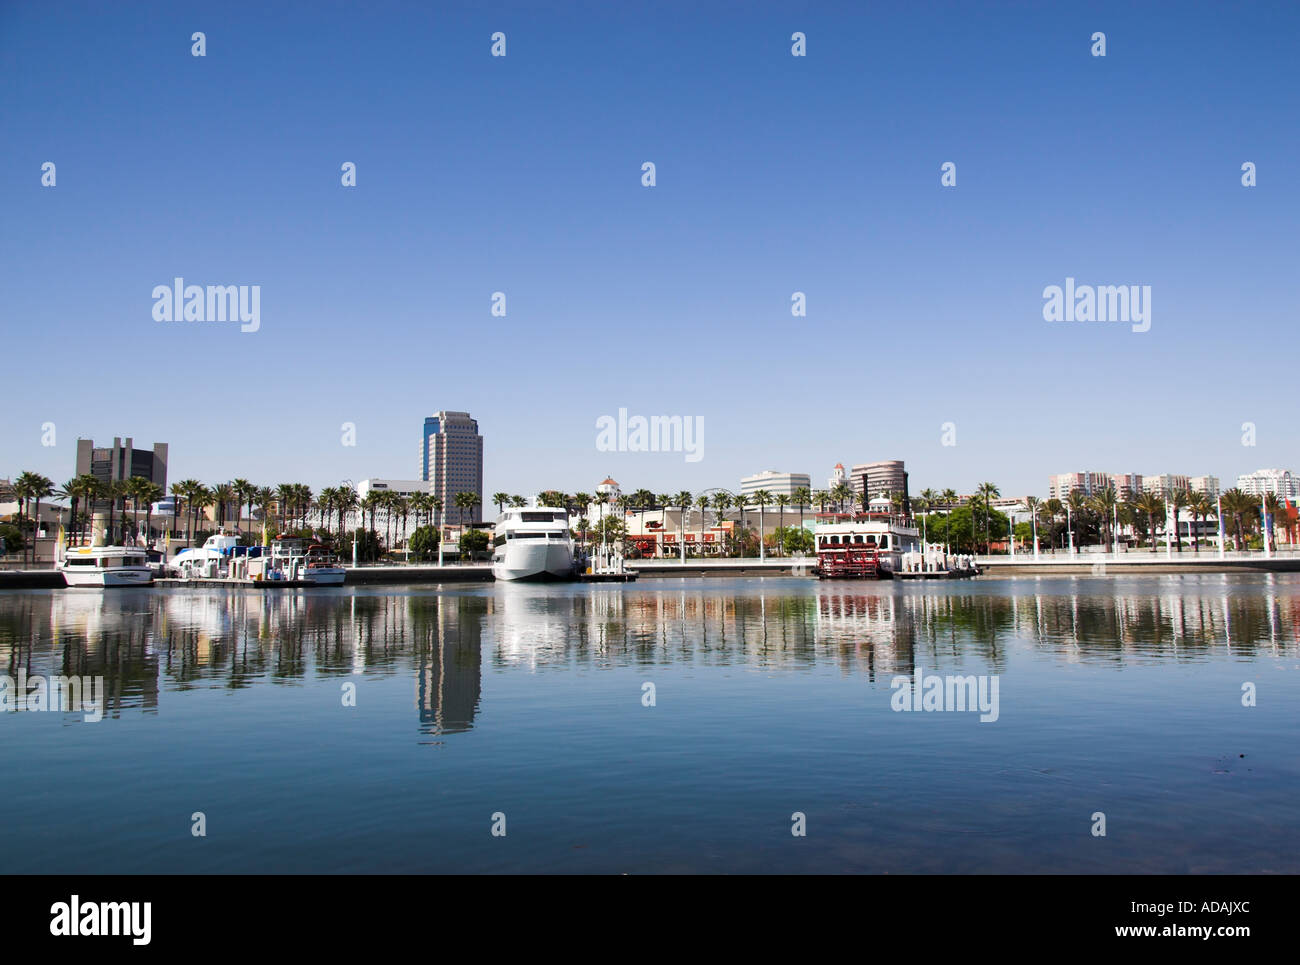 Downtown Long Beach skyline across Rainbow Harbor, California, USA Stock Photo